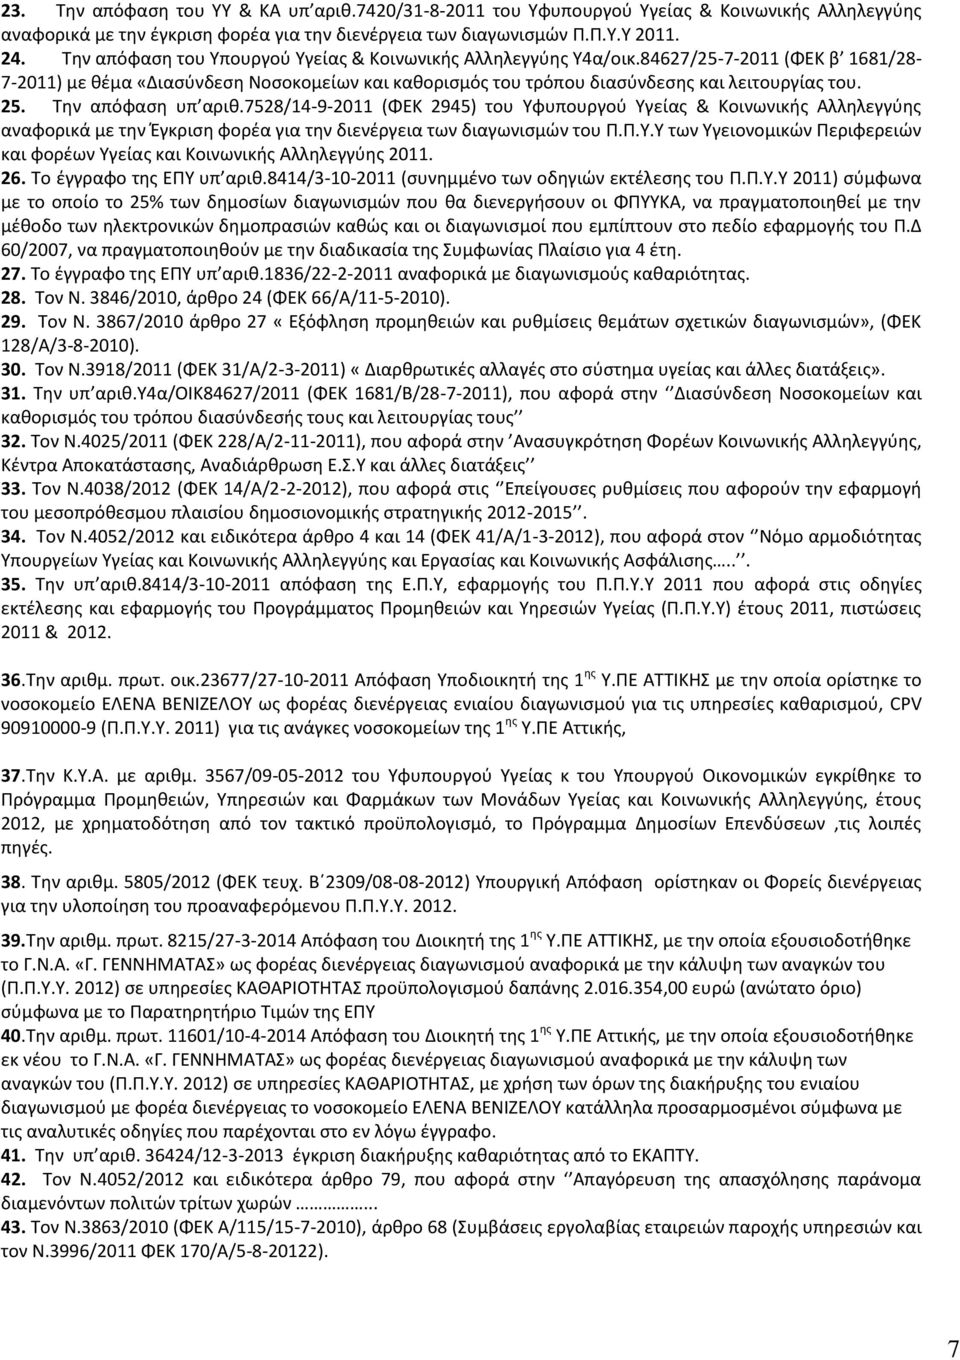 Την απόφαση υπ αριθ.7528/14-9-2011 (ΦΕΚ 2945) του Υφυπουργού Υγείας & Κοινωνικής Αλληλεγγύης αναφορικά με την Έγκριση φορέα για την διενέργεια των διαγωνισμών του Π.Π.Υ.Υ των Υγειονομικών Περιφερειών και φορέων Υγείας και Κοινωνικής Αλληλεγγύης 2011.